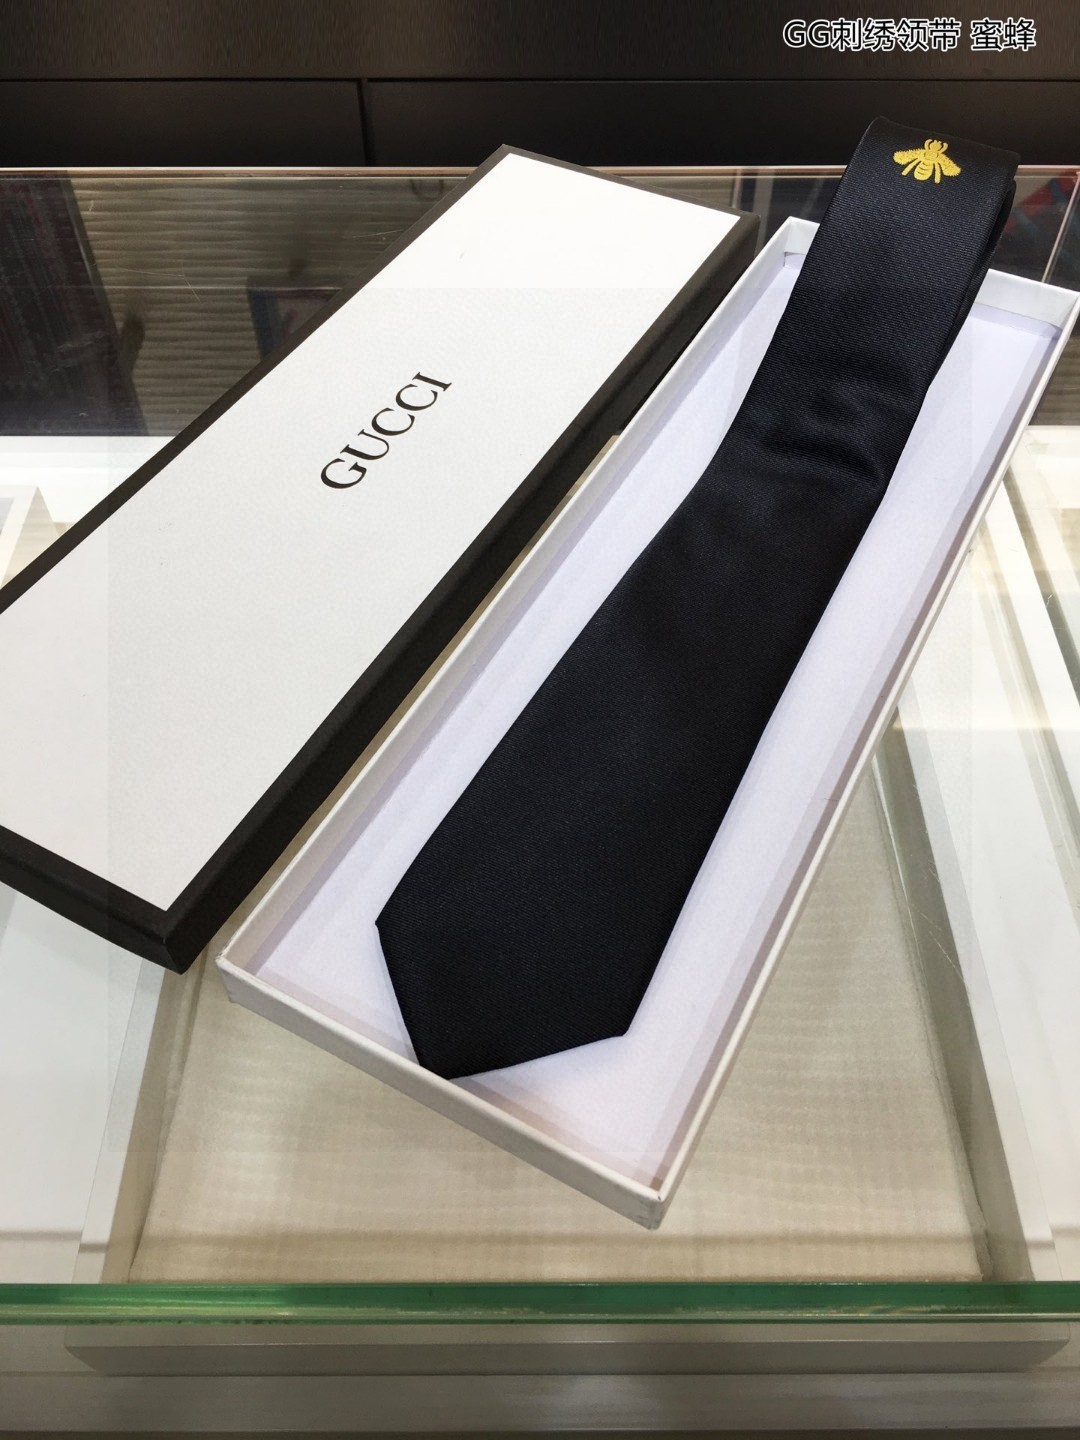 特价G家男士领带系列蜜蜂领带GG刺绣领带稀有采用经典主题动物绣花展现精湛手工与时尚优雅的理想选择这款领带